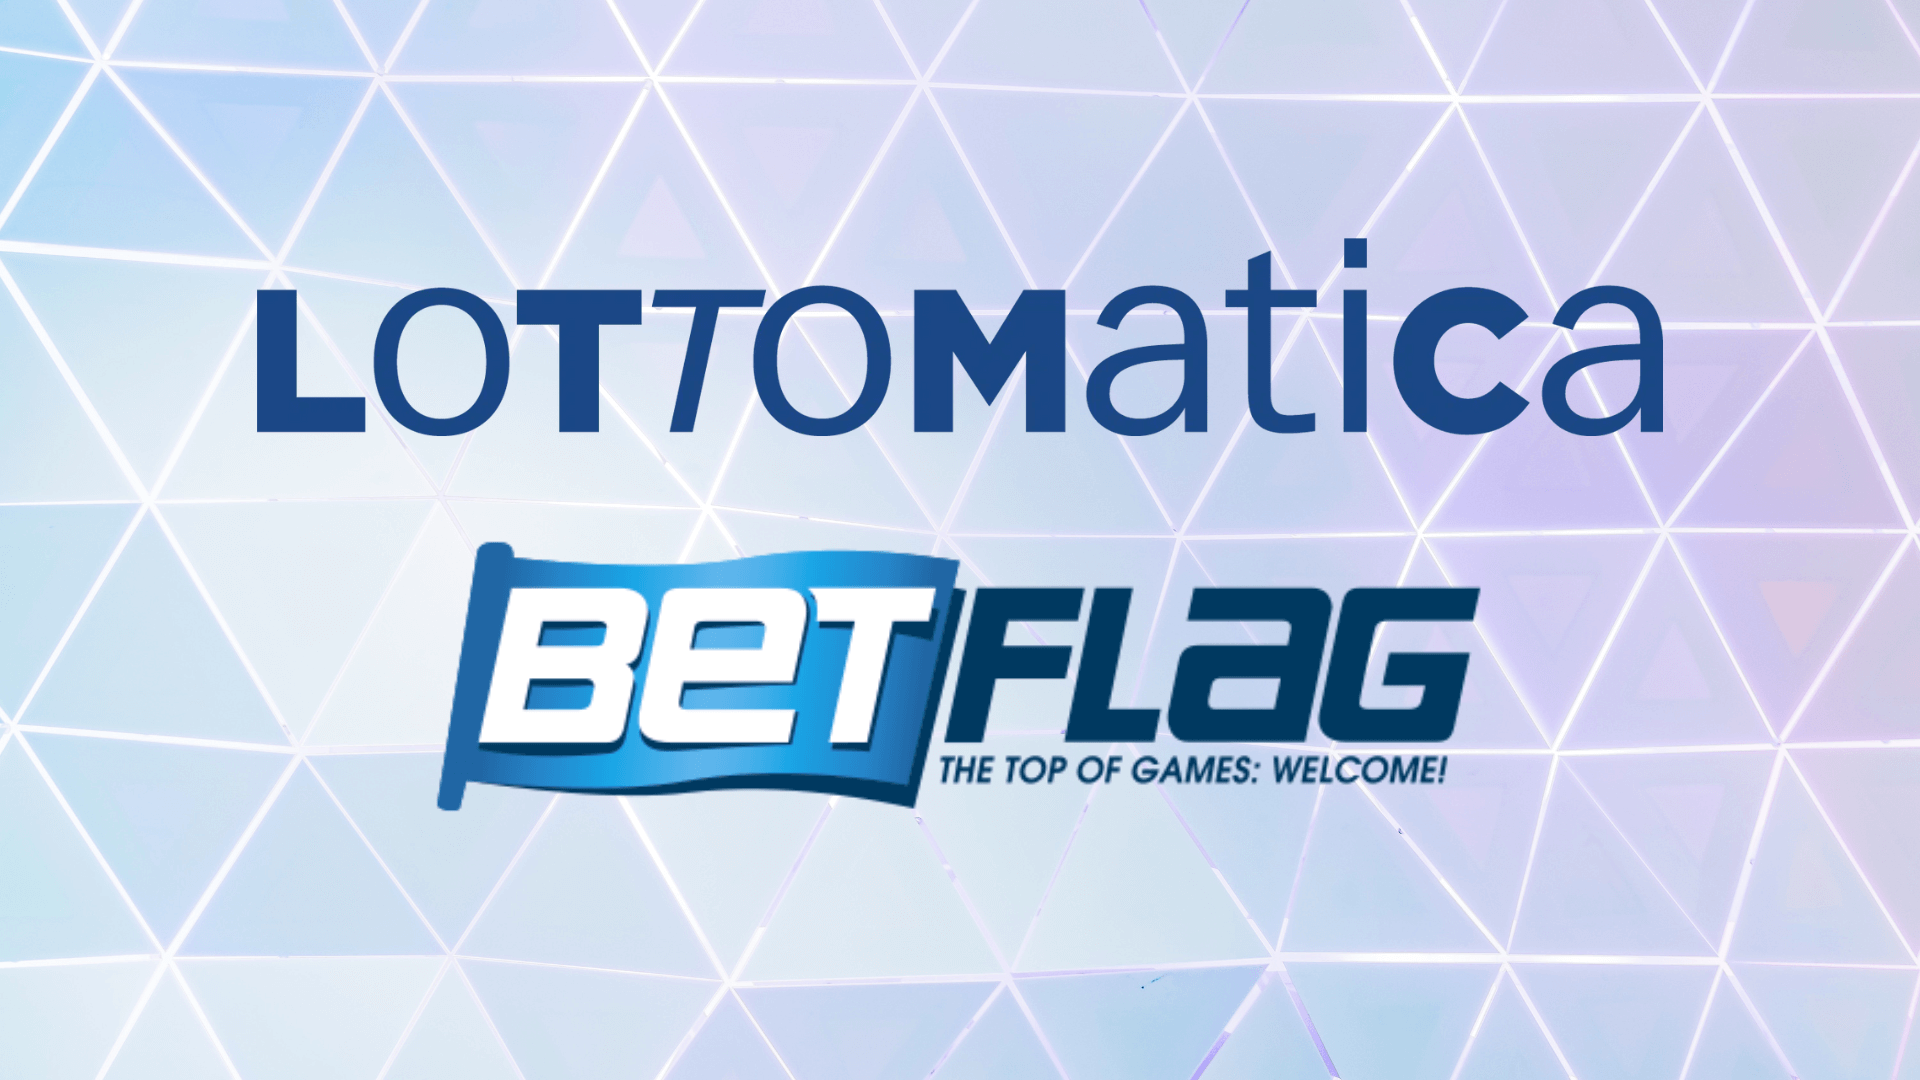 Lottomatica mengakuisisi 100% BetFlag: operasi senilai 310 juta euro.  Grup memperkuat posisinya dengan melanjutkan strategi multi-merek